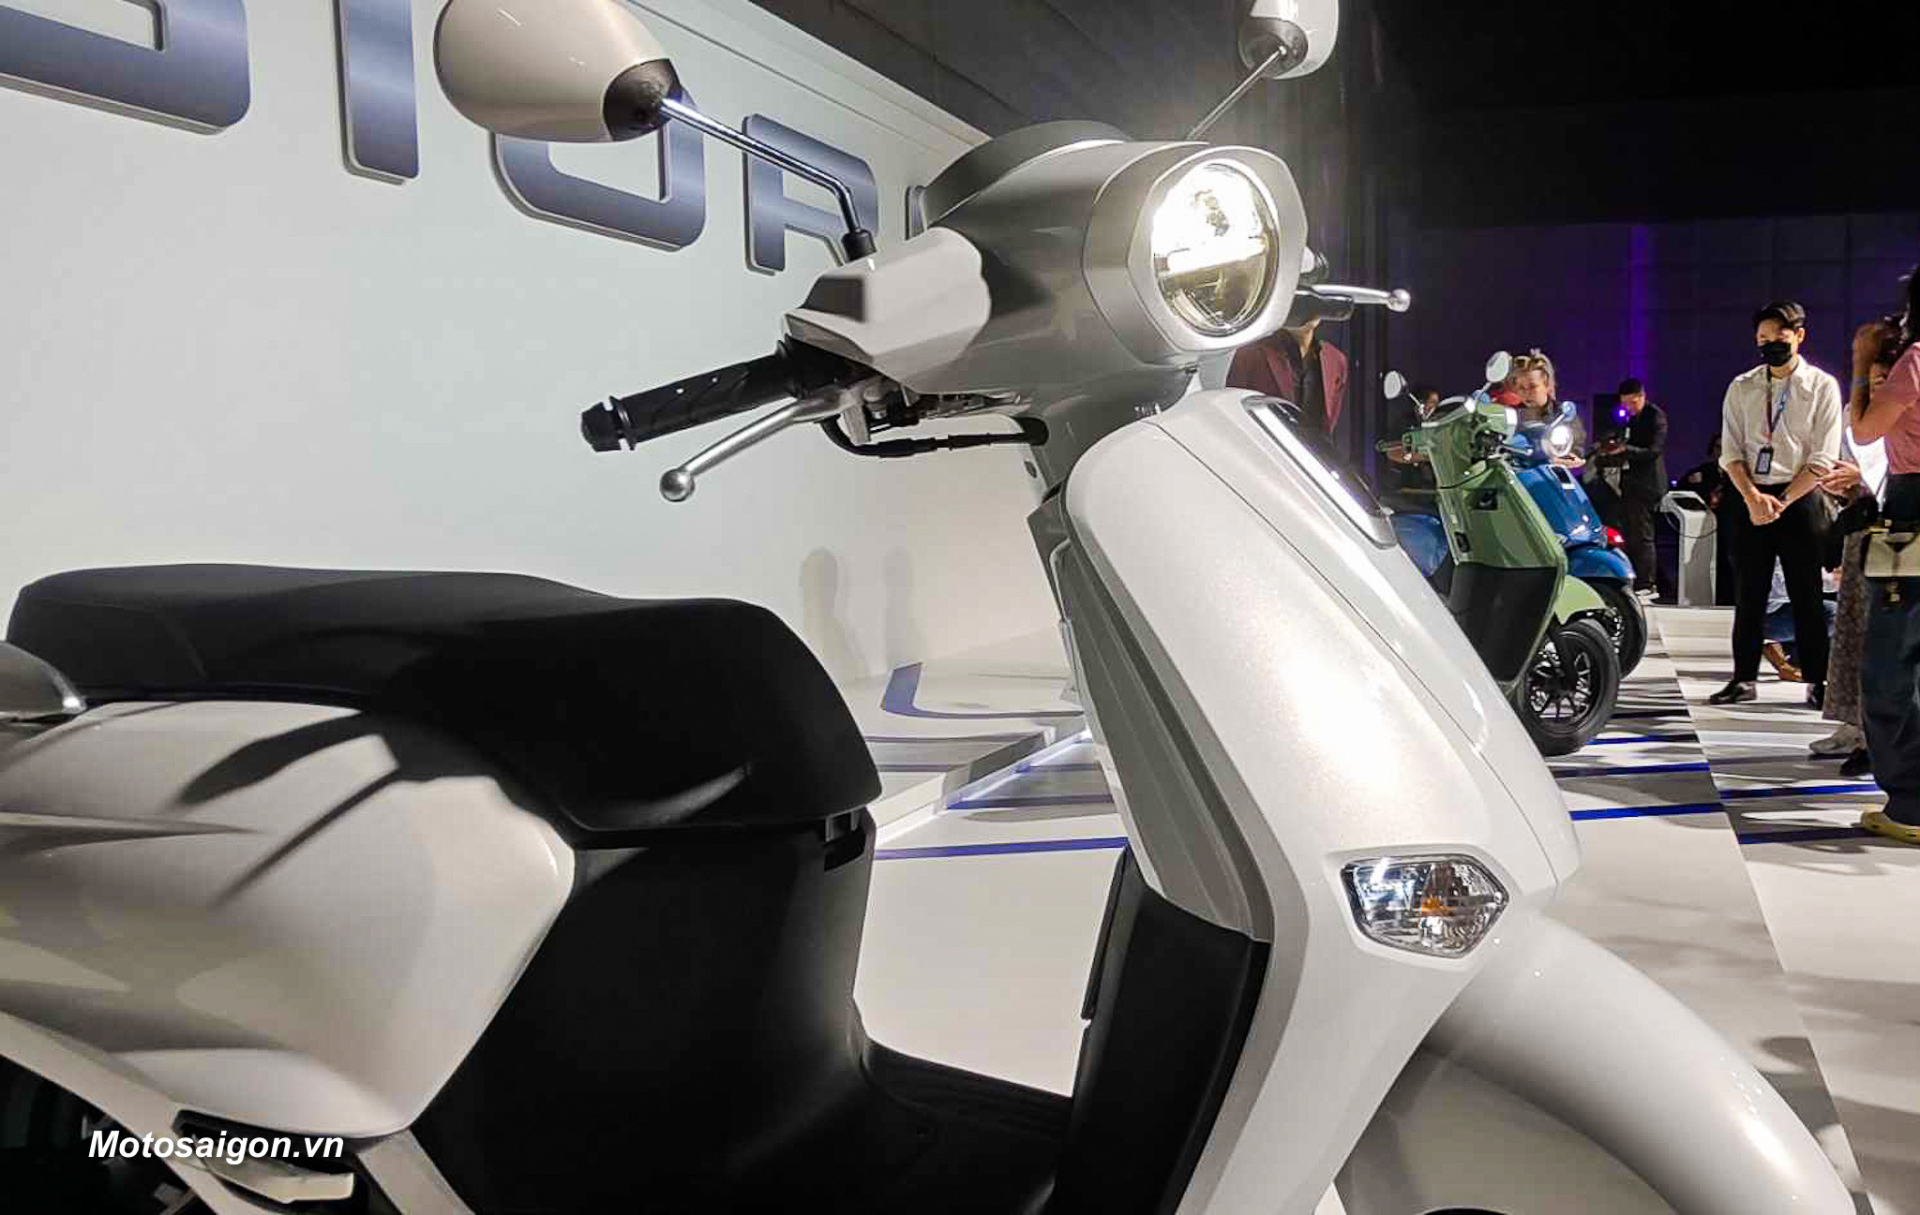 Honda Giorno Plus được tạo dáng đèn pha dạng tròn, hệ thống đèn trên xe tích hợp công nghệ đèn LED.